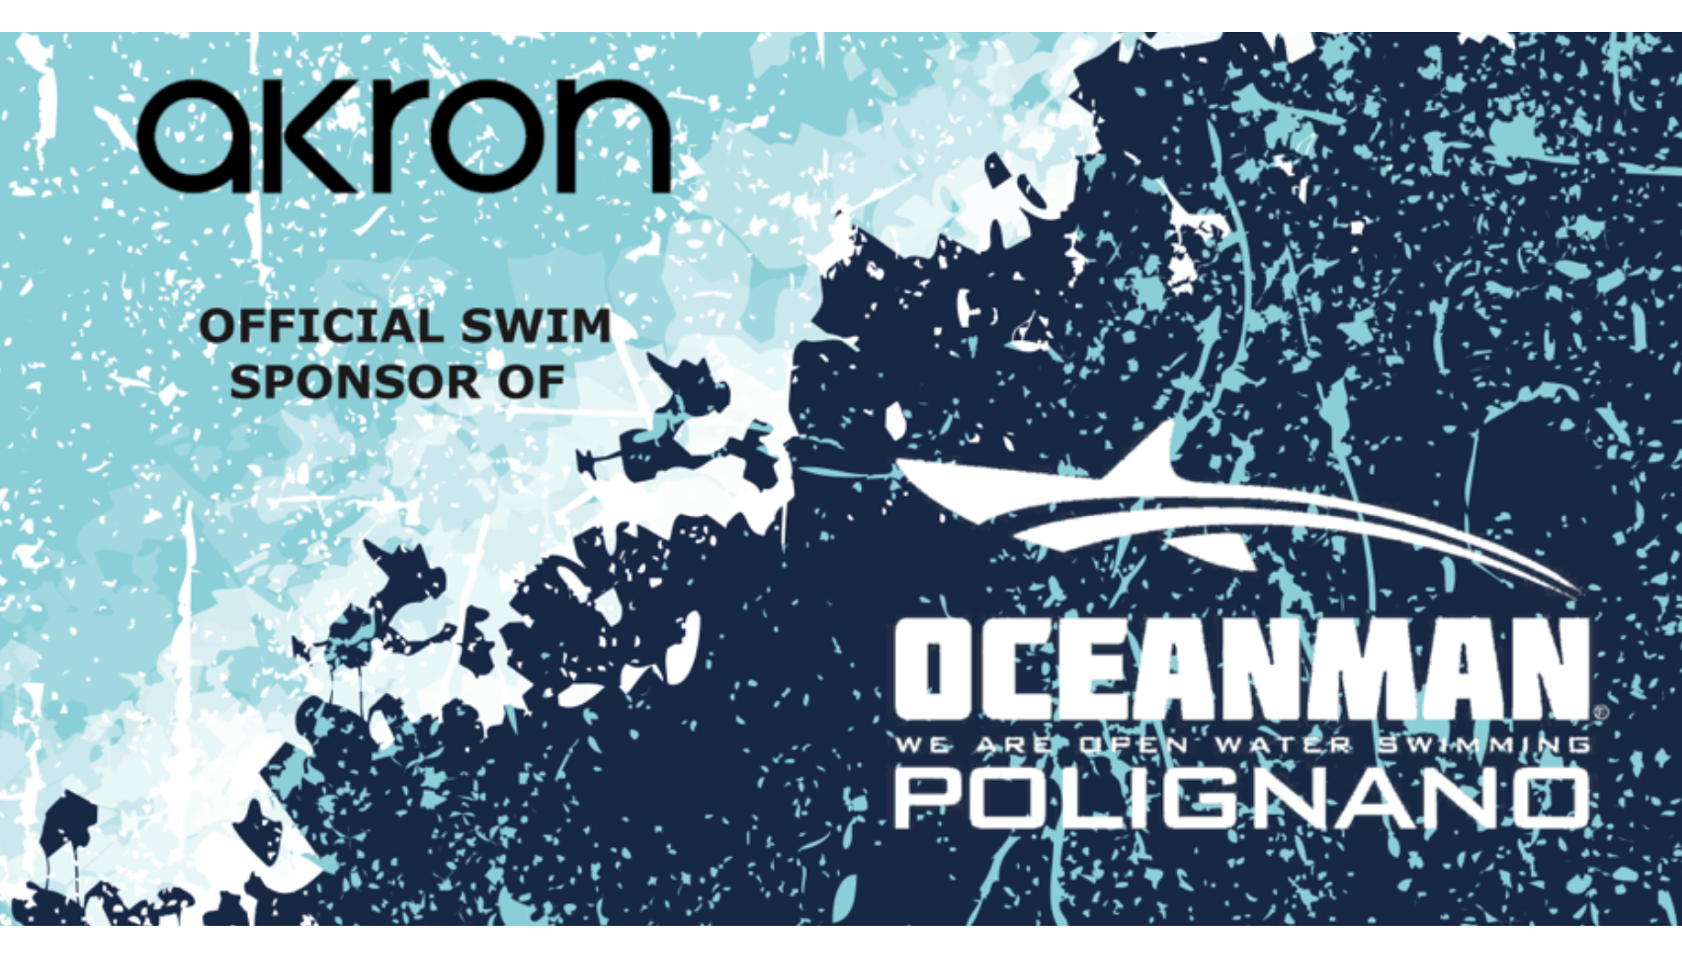 Scopri di più sull'articolo Akron official swim sponsor di Oceanman Polignano 2019